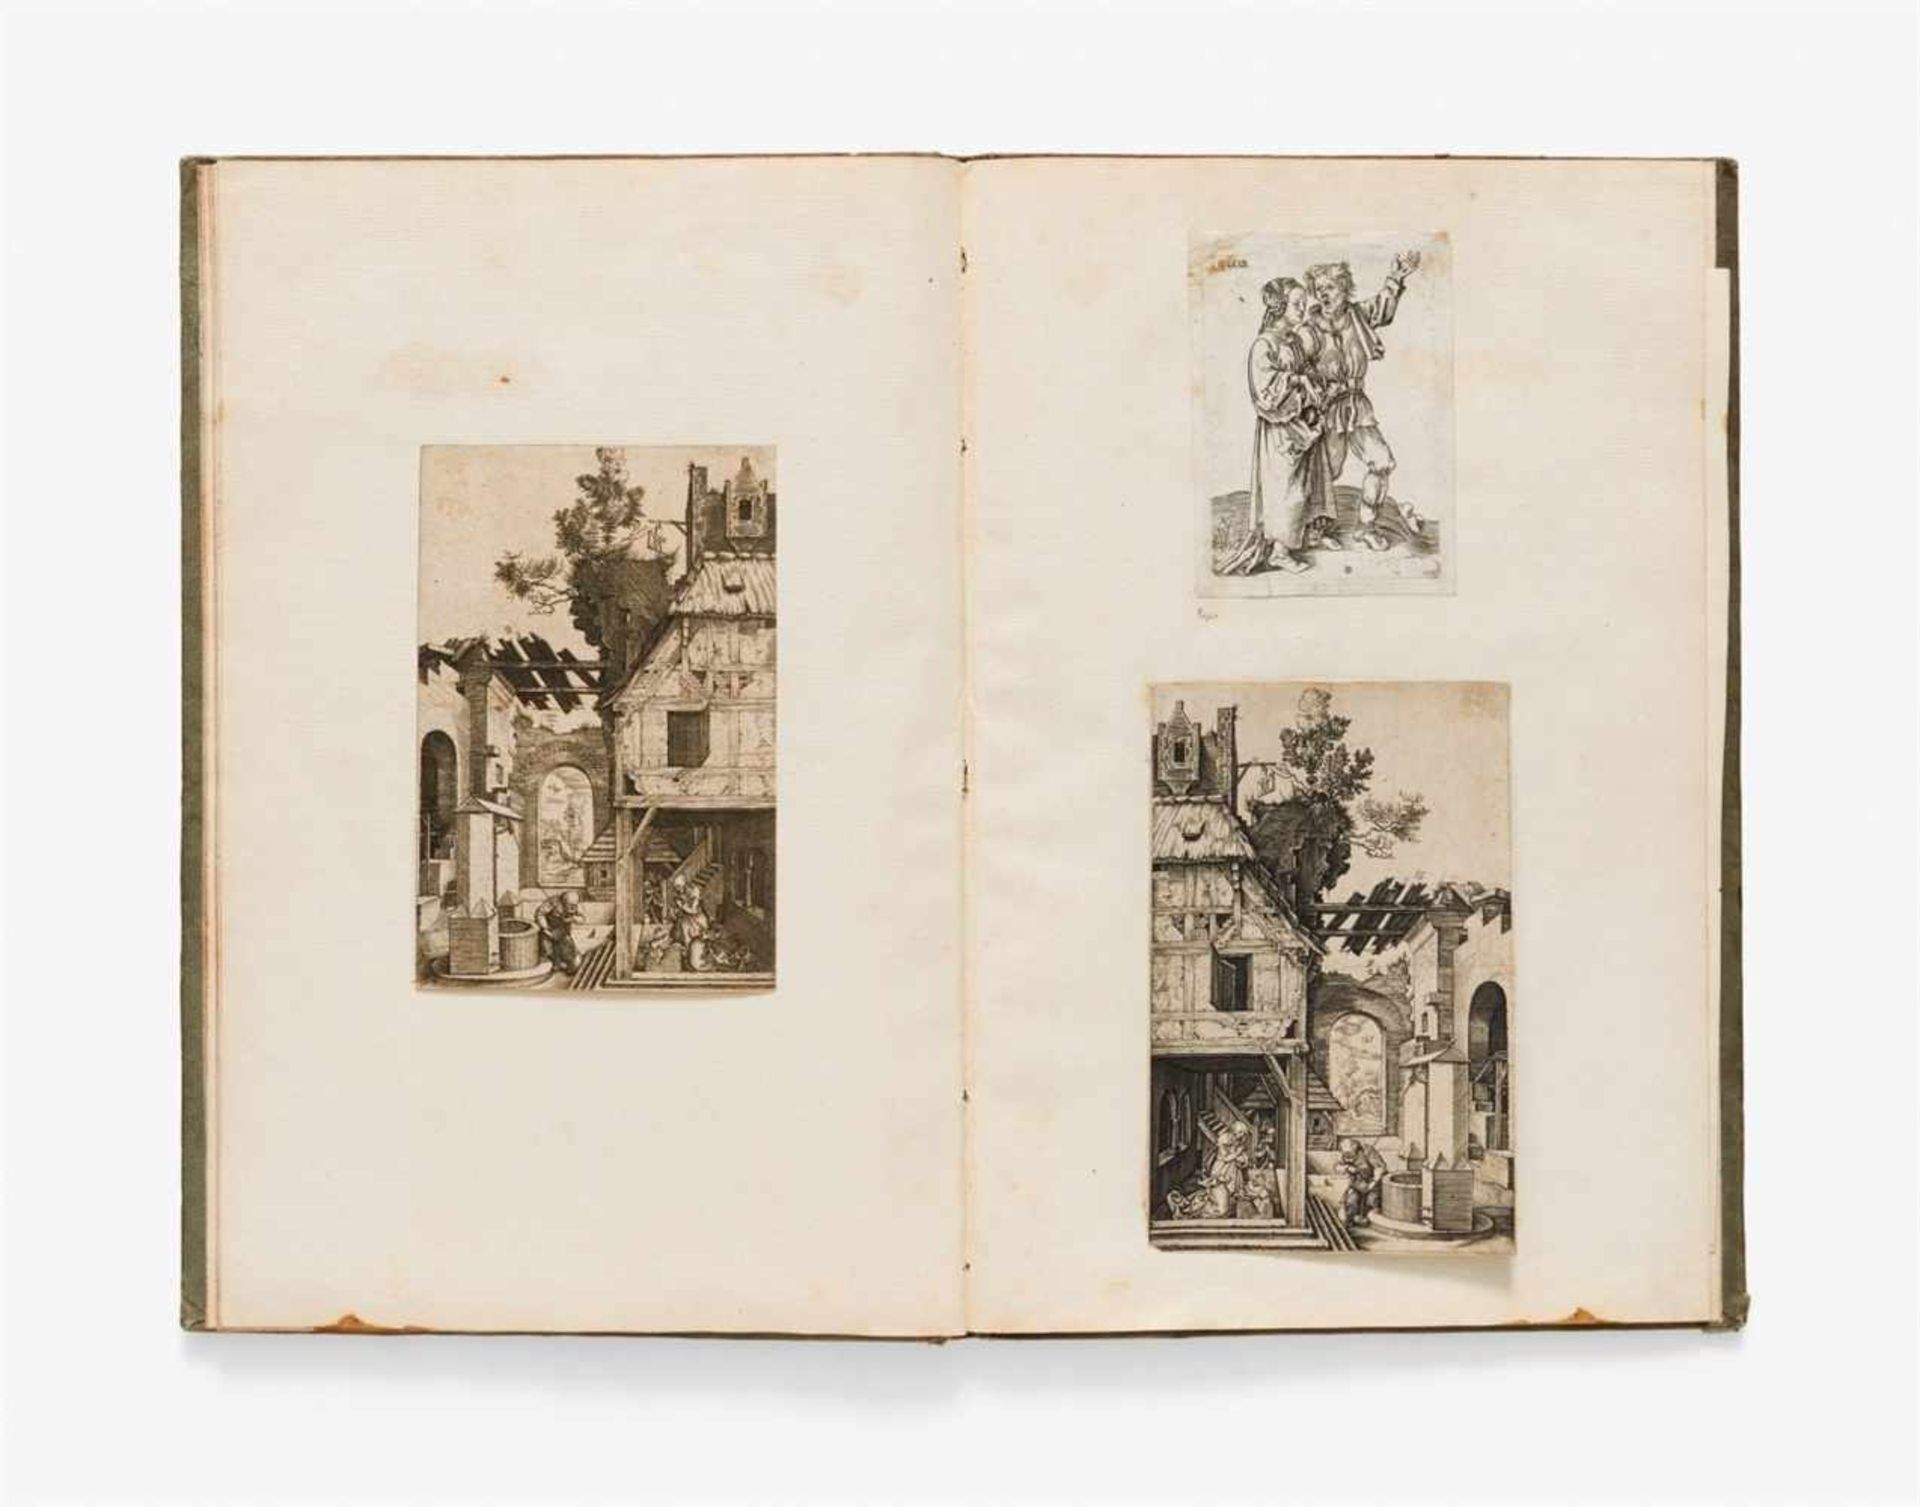 ALBRECHT DÜRER, NachNürnberg 1471 - 1528 Sammelband mit dem Kupferstich Philipp Melanchthon von